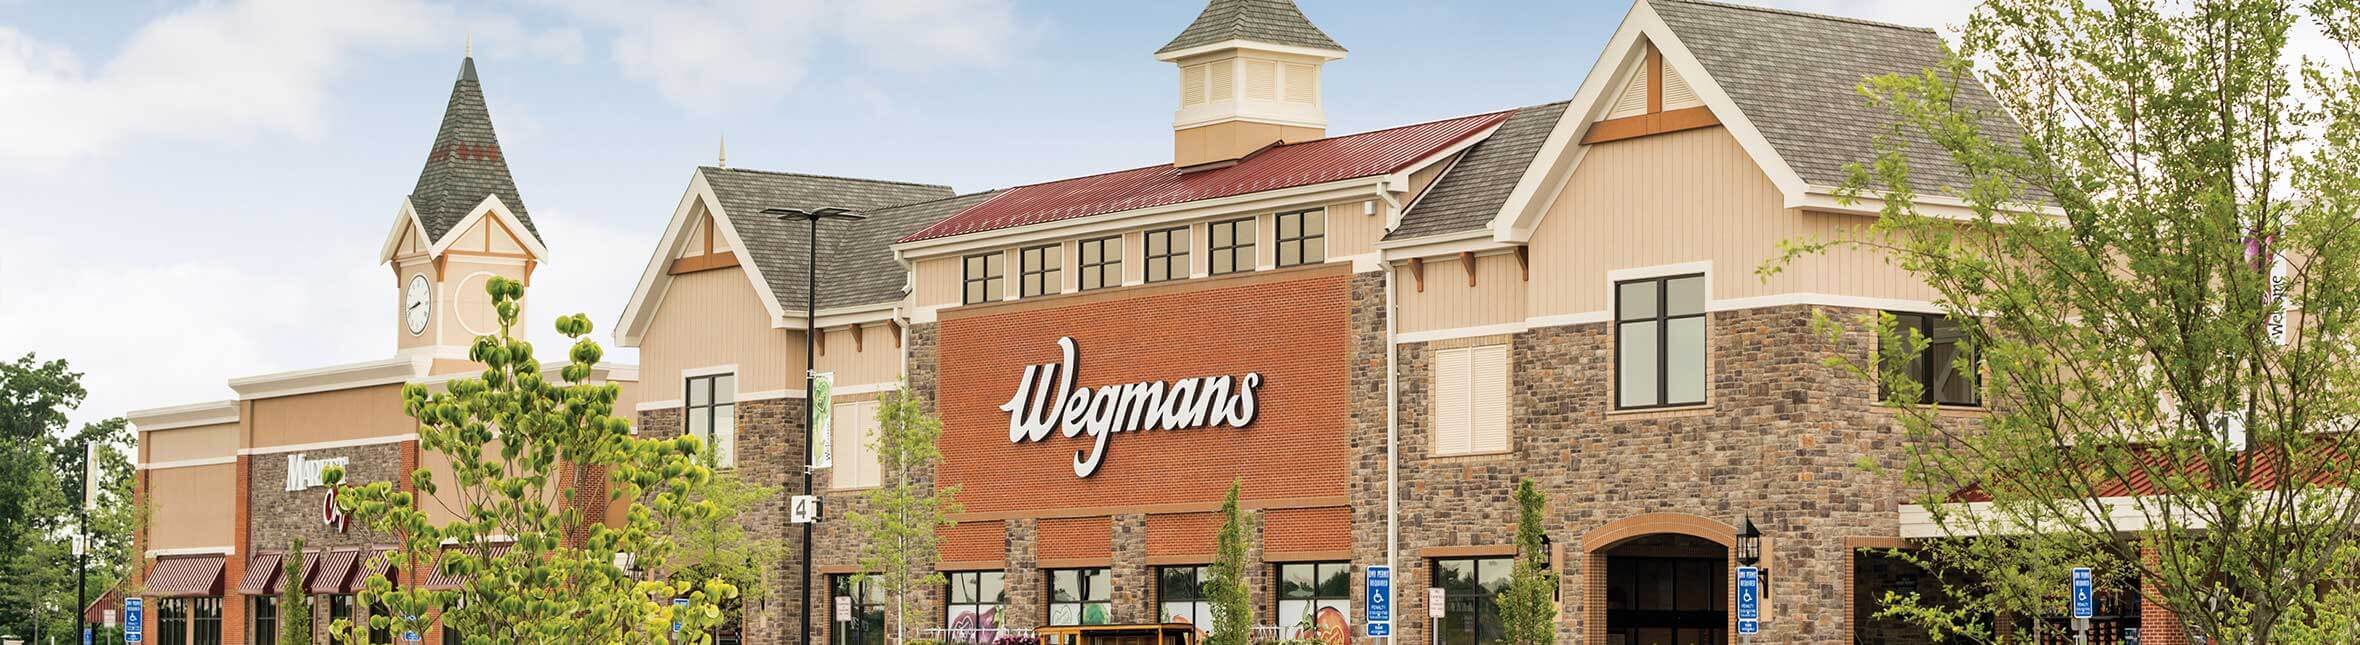 Wegman's Food Markets Inc. | Magnet